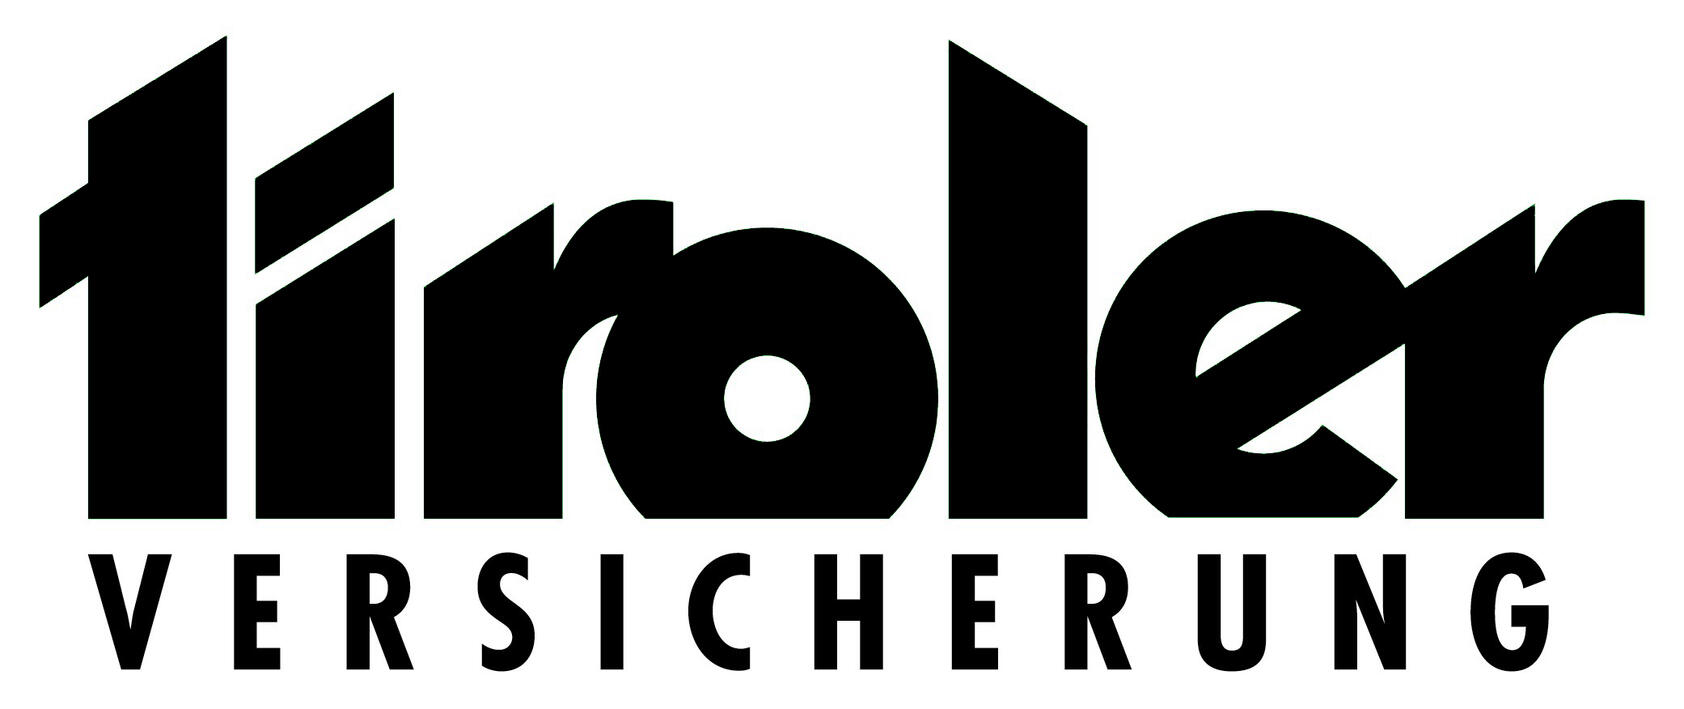 Logo TIROLER VERSICHERUNG - schwarz/weiss